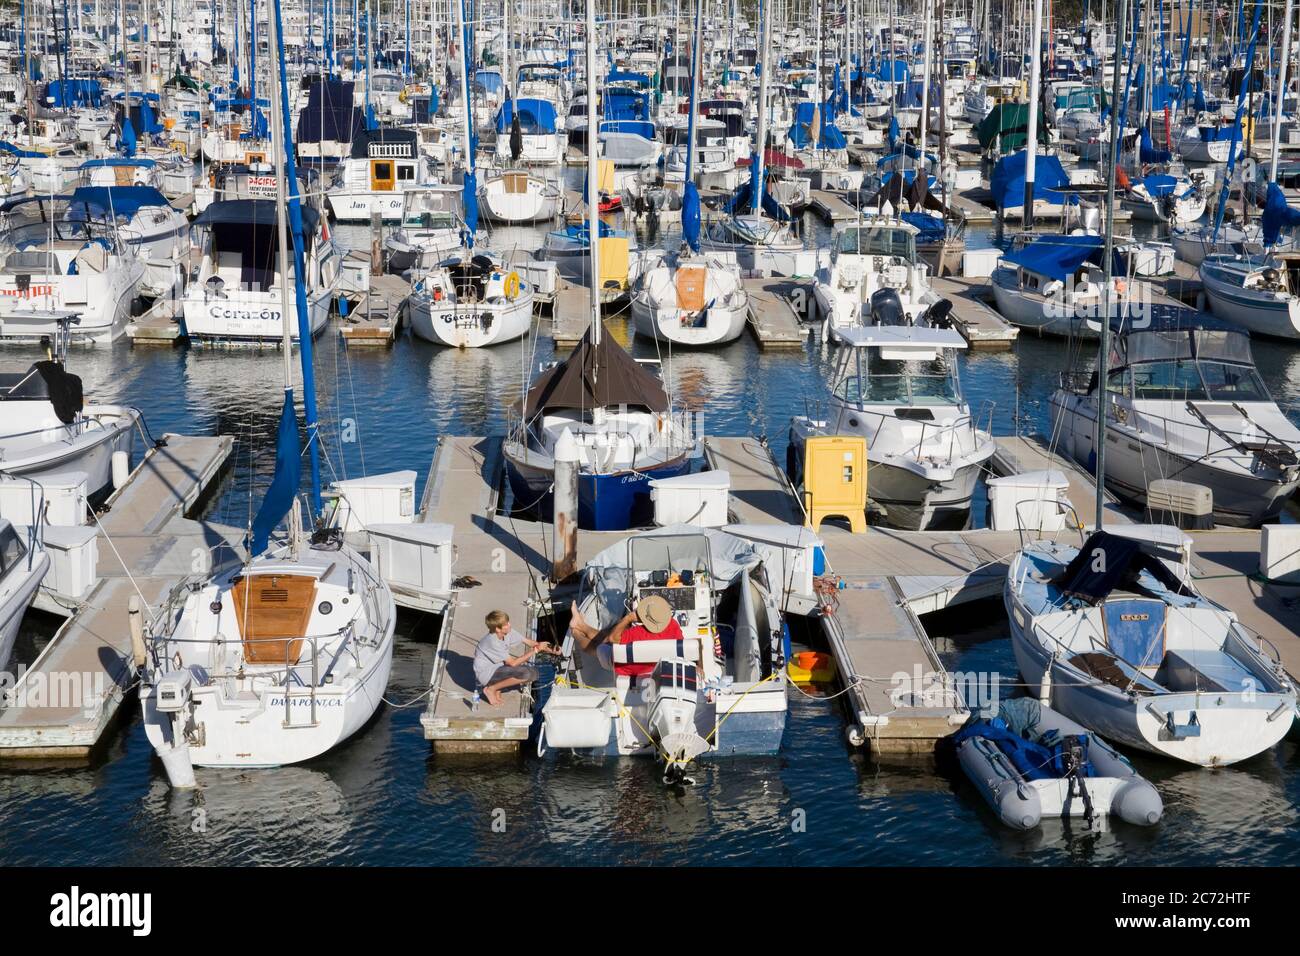 Marina dans le port de Dana point, comté d'Orange, Californie, États-Unis Banque D'Images